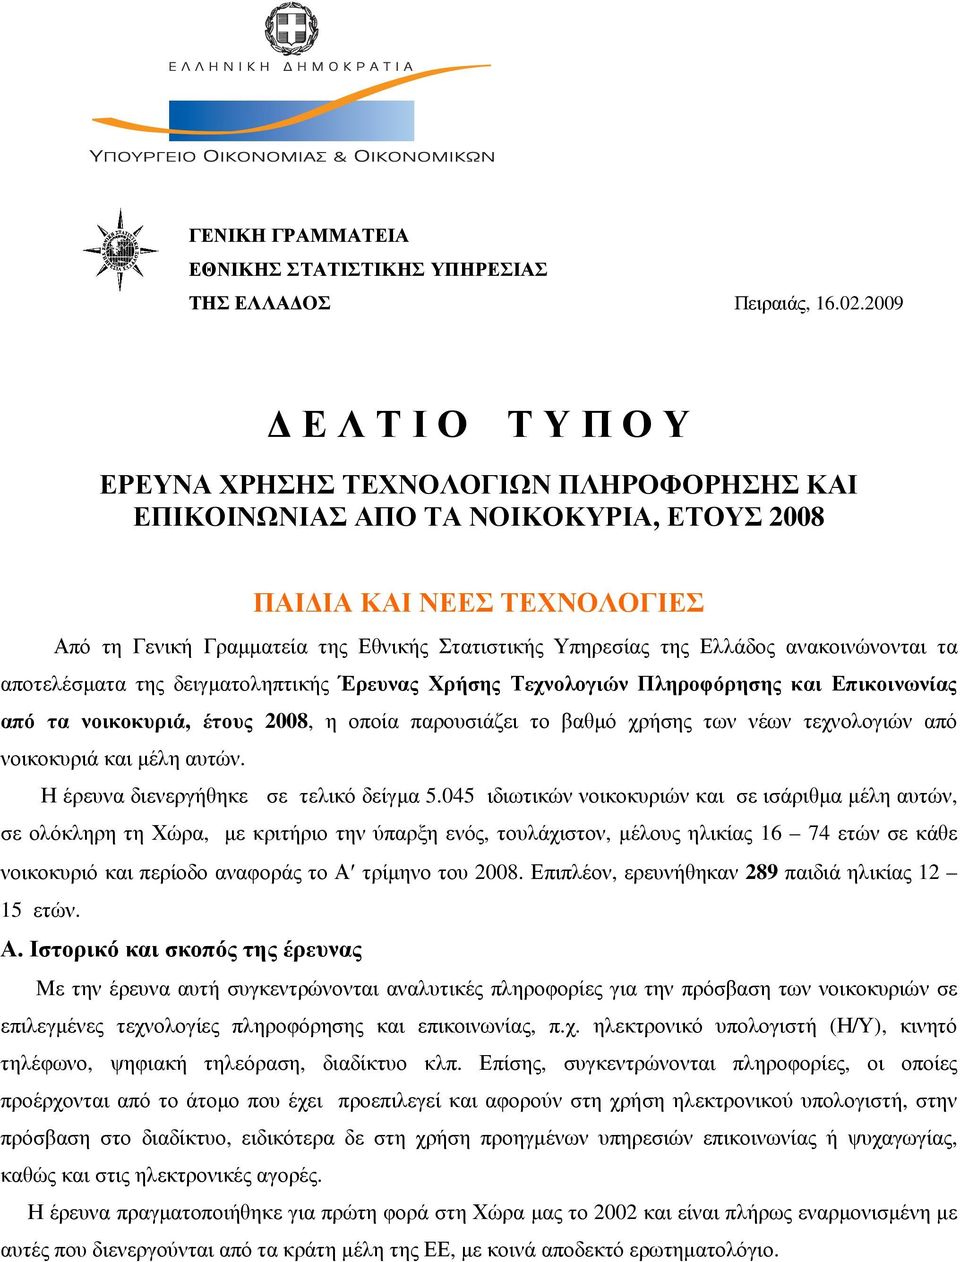 της Ελλάδος ανακοινώνονται τα αποτελέσµατα της δειγµατοληπτικής Έρευνας Χρήσης Τεχνολογιών Πληροφόρησης και Επικοινωνίας από τα νοικοκυριά, έτους 2008, η οποία παρουσιάζει το βαθµό χρήσης των νέων